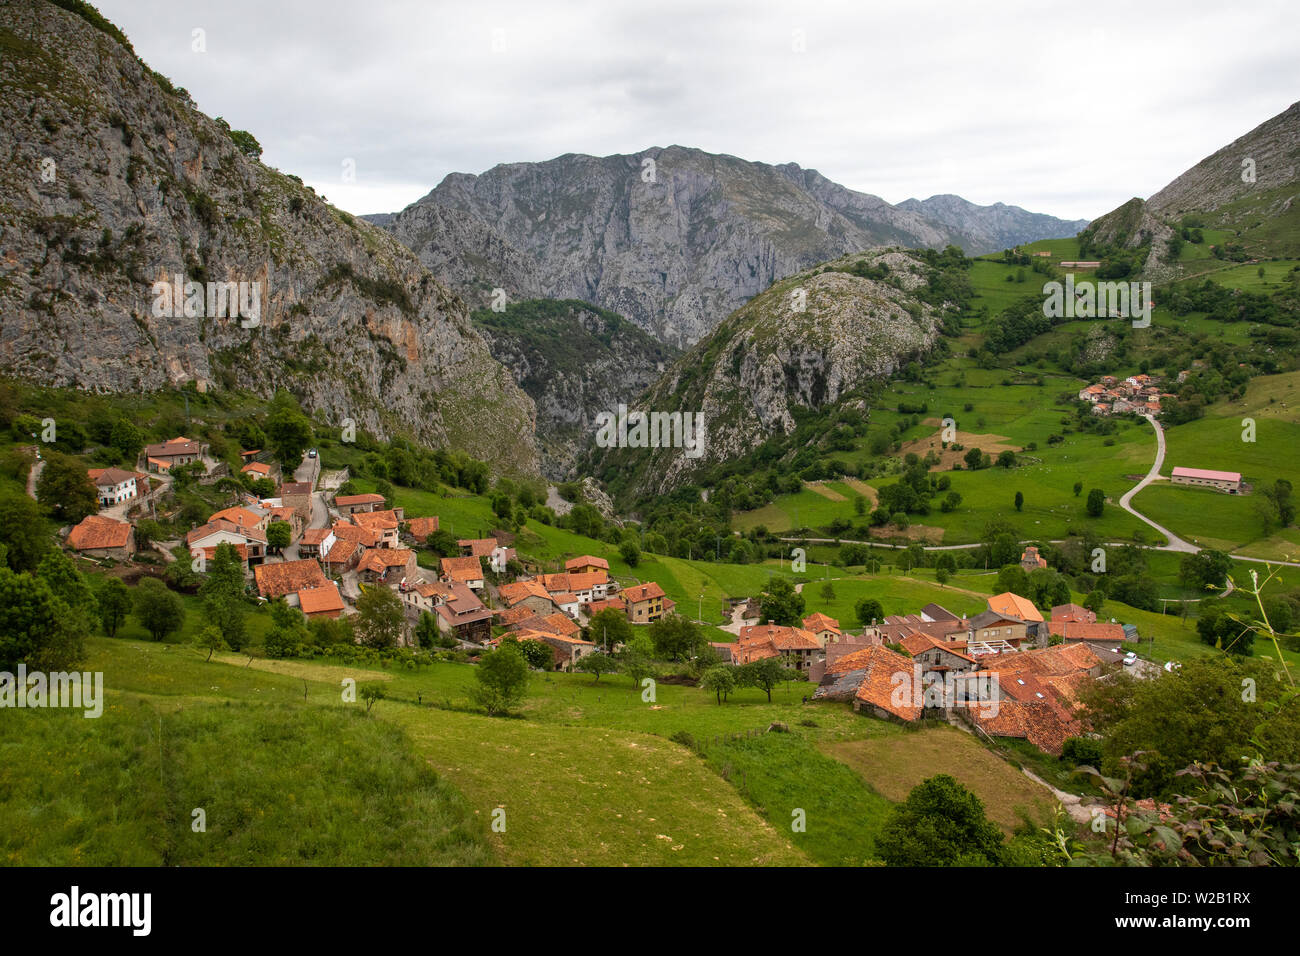 Villaggio alpino rustico di Bejes immerso nelle montagne del Parco Nazionale Picos de Europa nel nord della Spagna Foto Stock